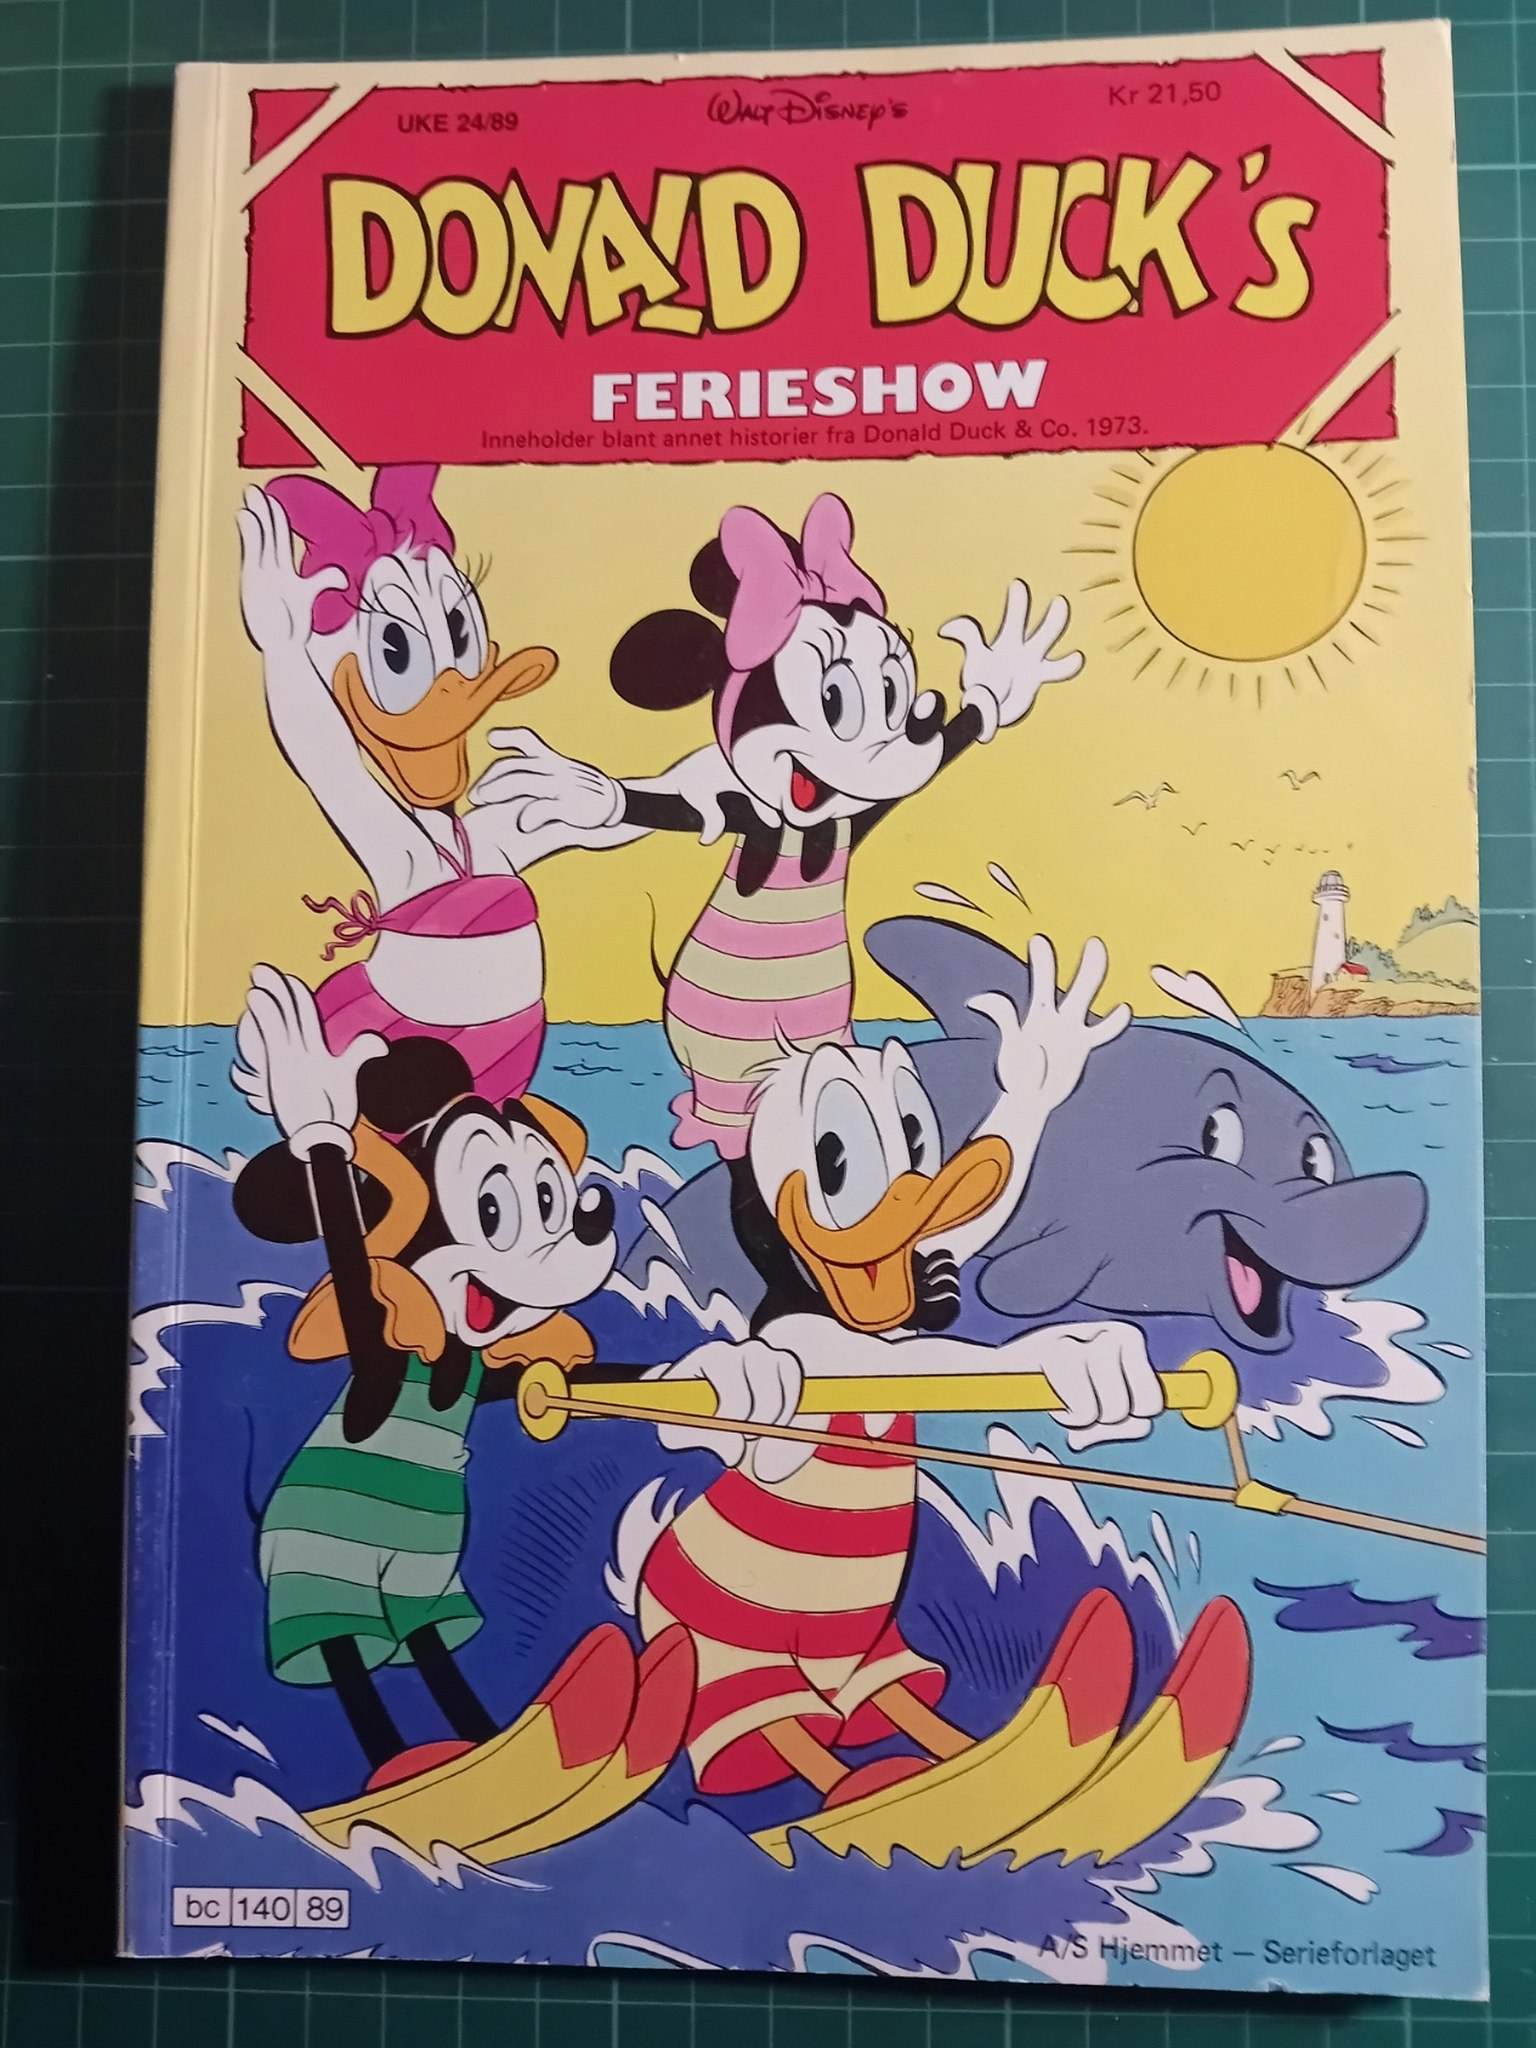 Donald Ducks 1989 Ferie show